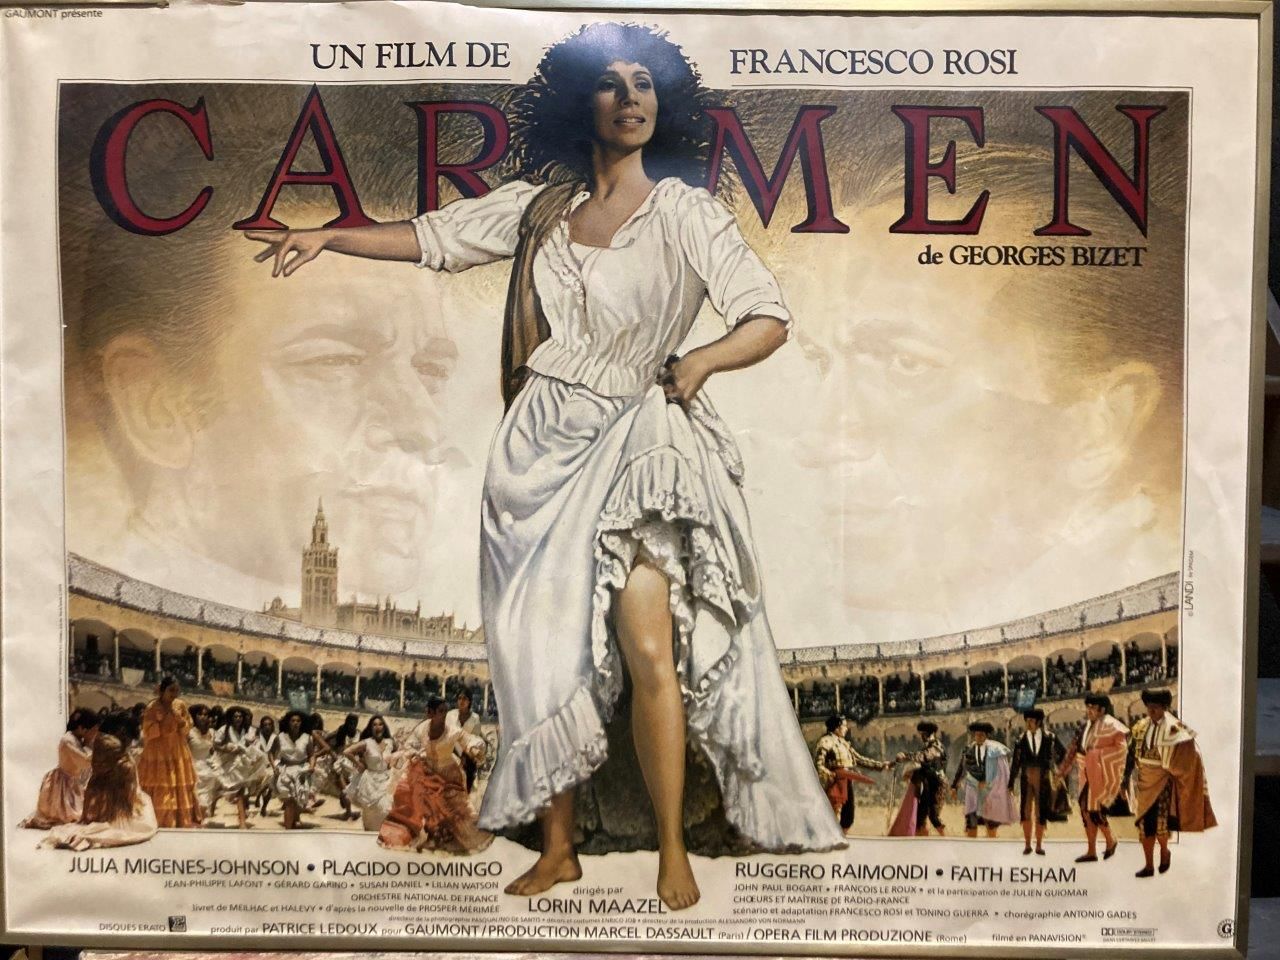 Fransceso Rosi CARMEN

Affiche de cinéma

59 x 79 cm encadrée